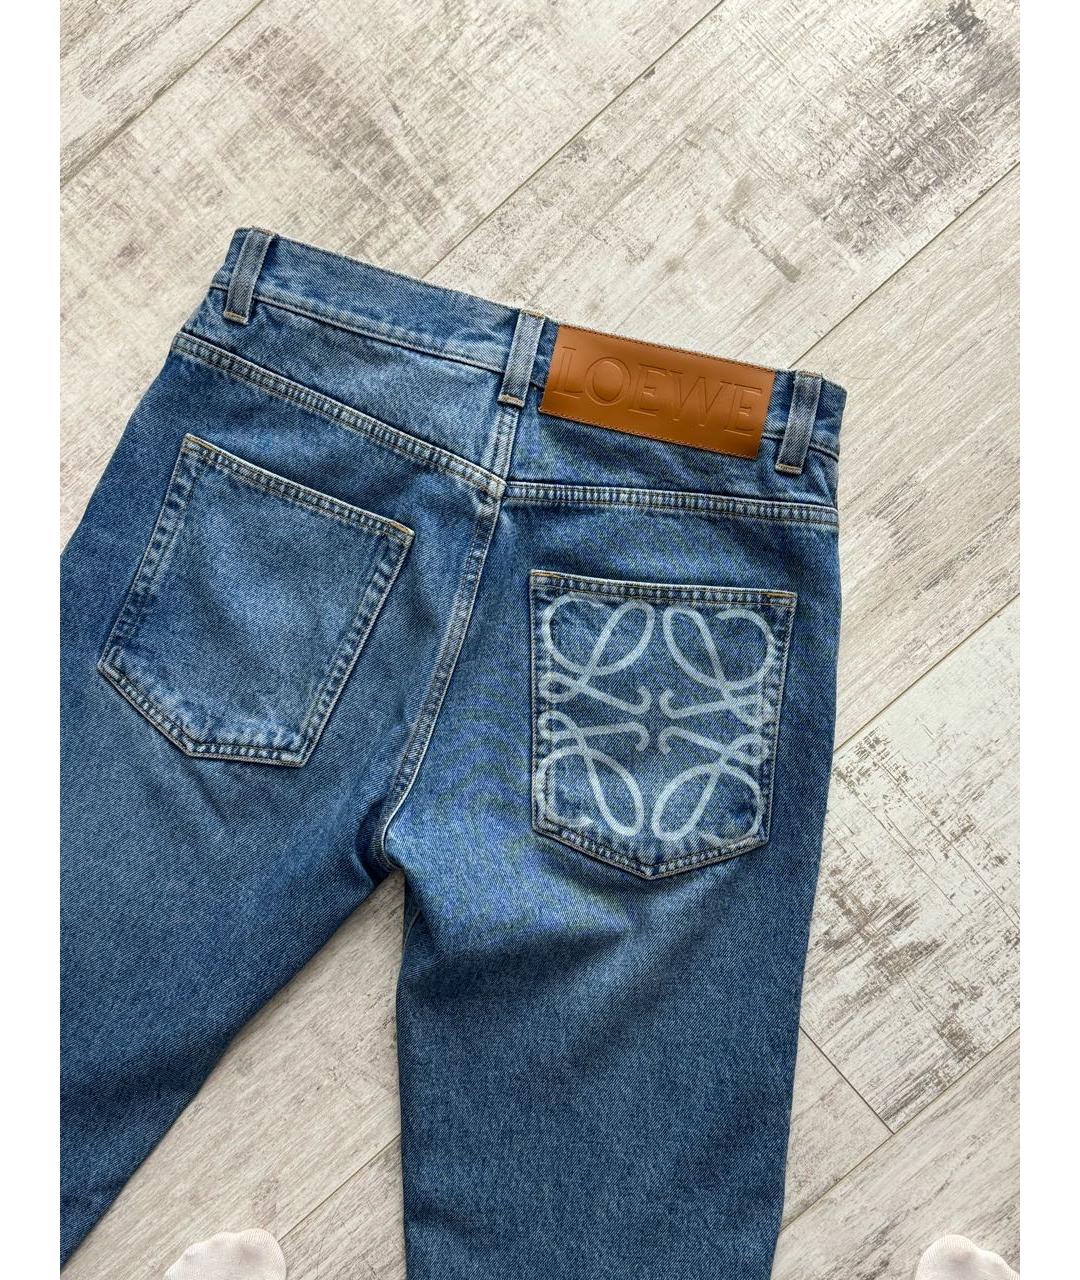 LOEWE Синие хлопковые прямые джинсы, фото 4